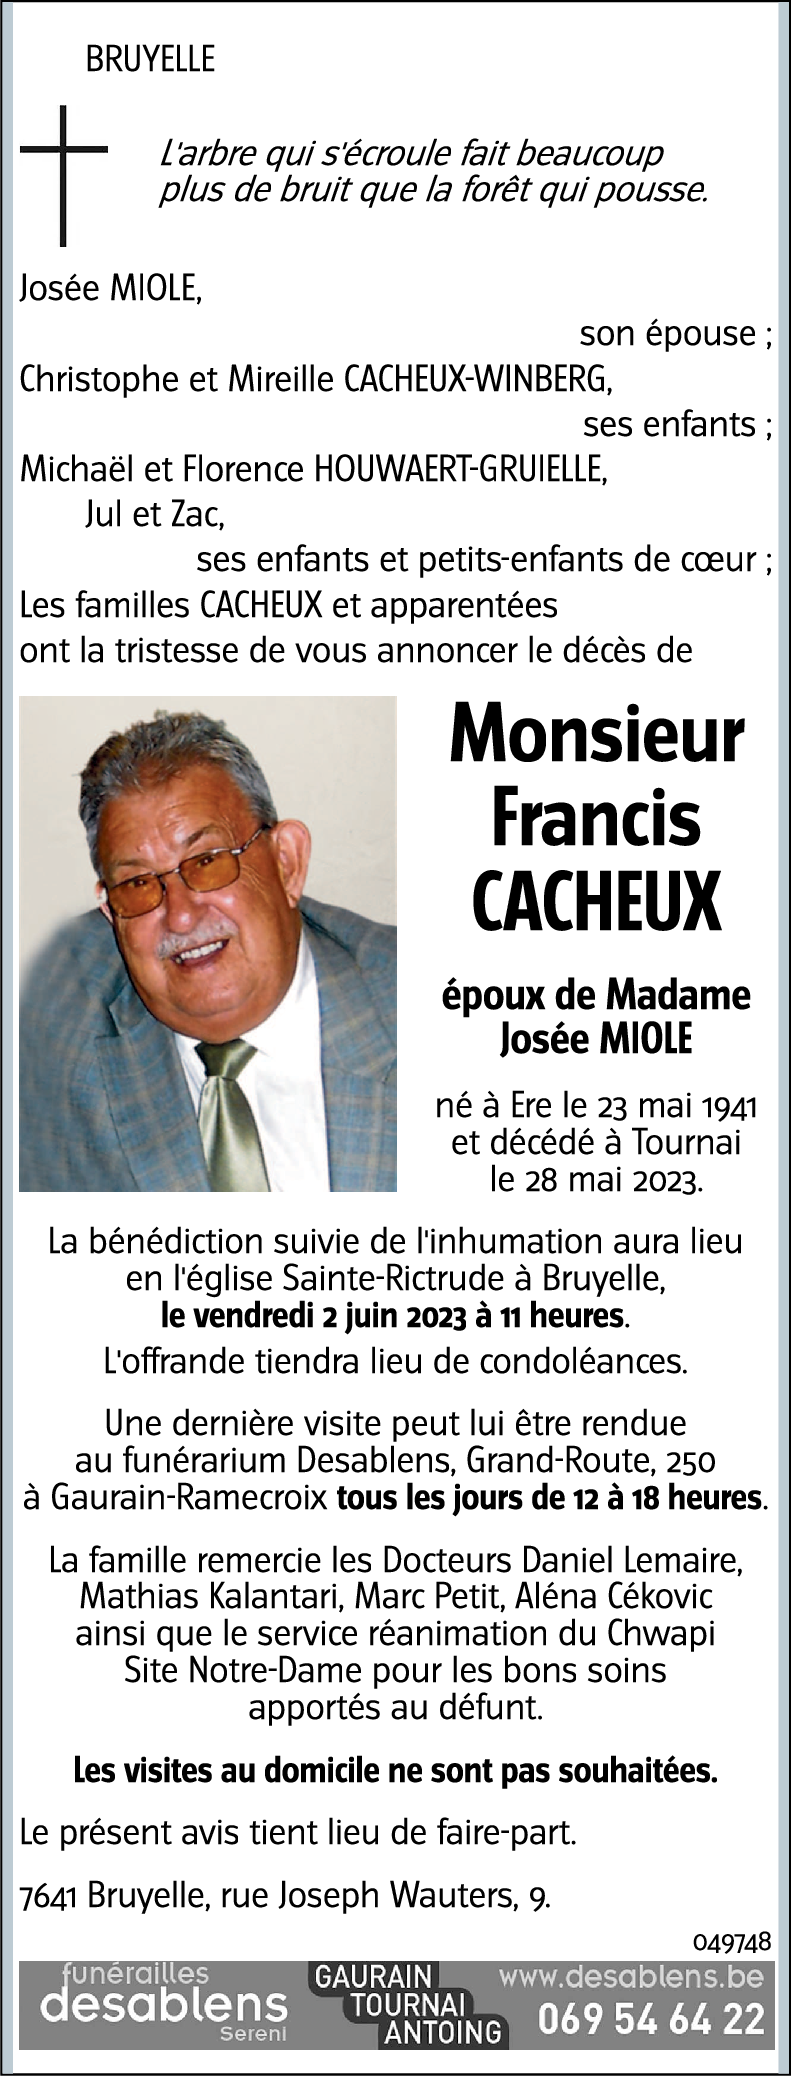 Francis CACHEUX